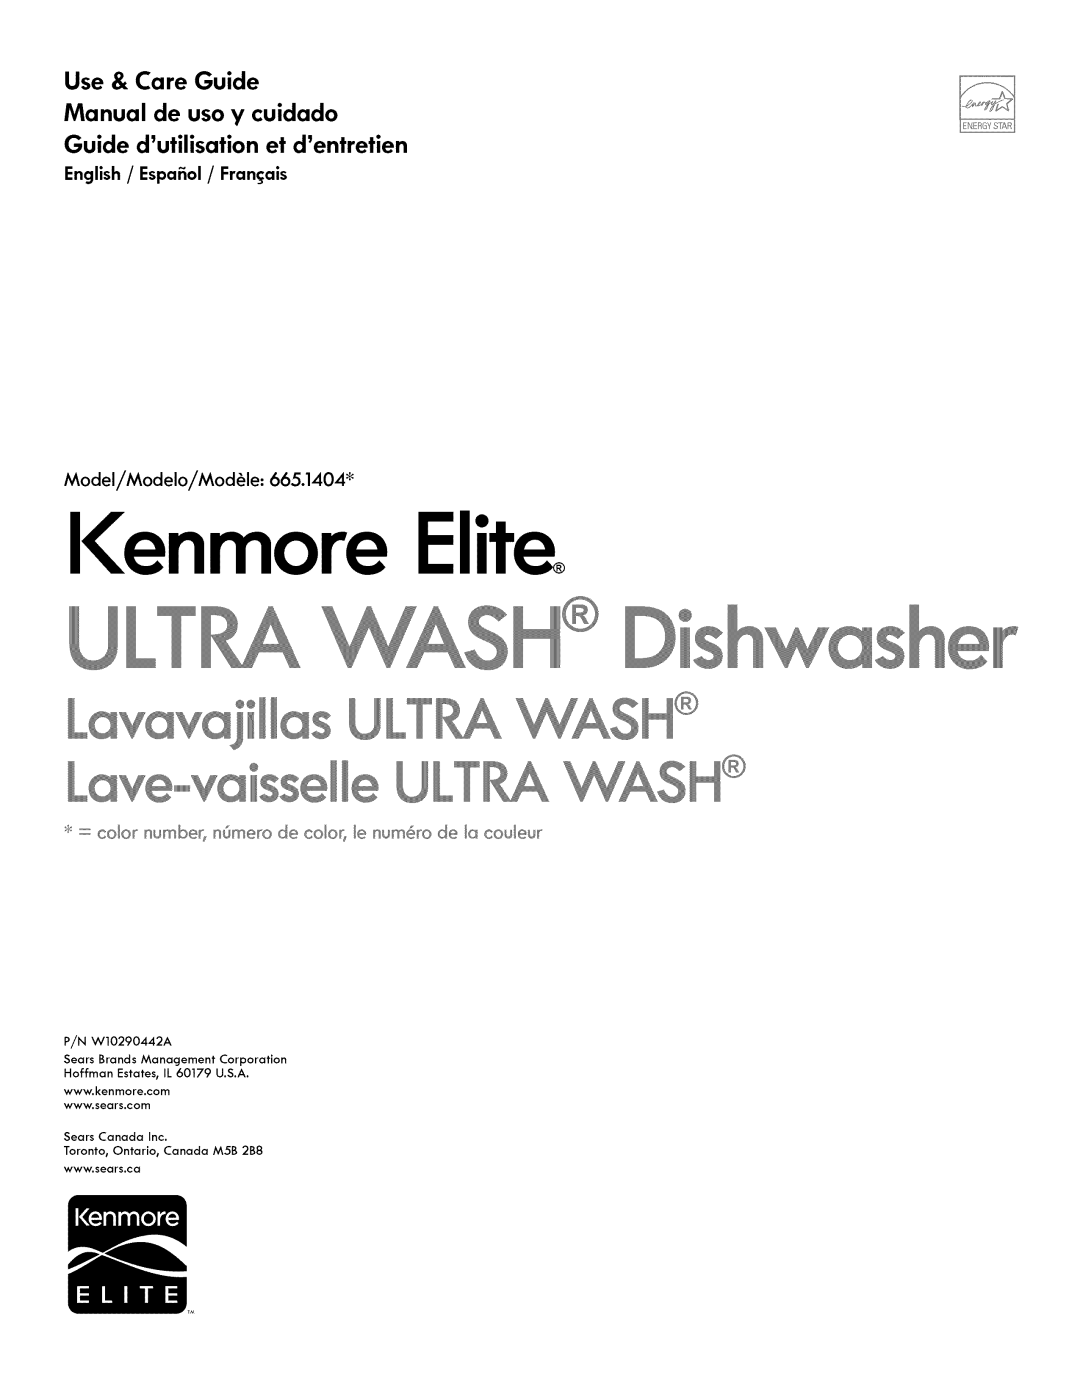 Kenmore 665.1404 manual Use & Care Guide Manual de uso y cuidado, Guide dutilisationet dentretien, Ienmore Elite, __ H 